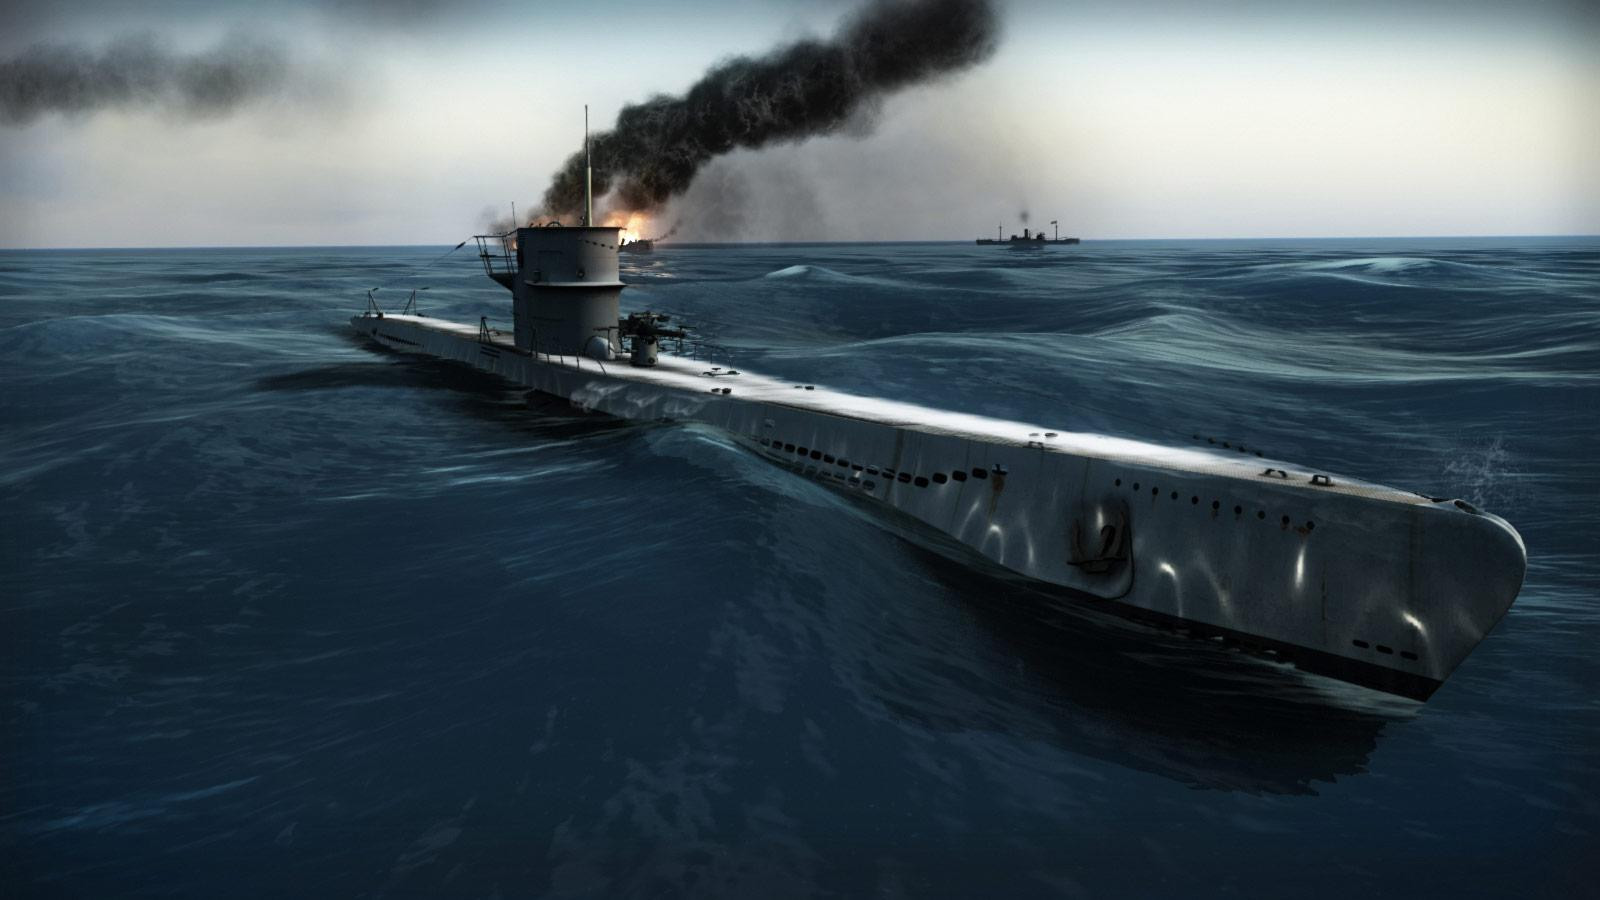 Silent hunter v battle. Silent Hunter 5 подводные лодки. Silent Hunter 5 подводные лодки Германии. Игра Silent Hunter. Silent Hunter v: Battle of the Atlantic.